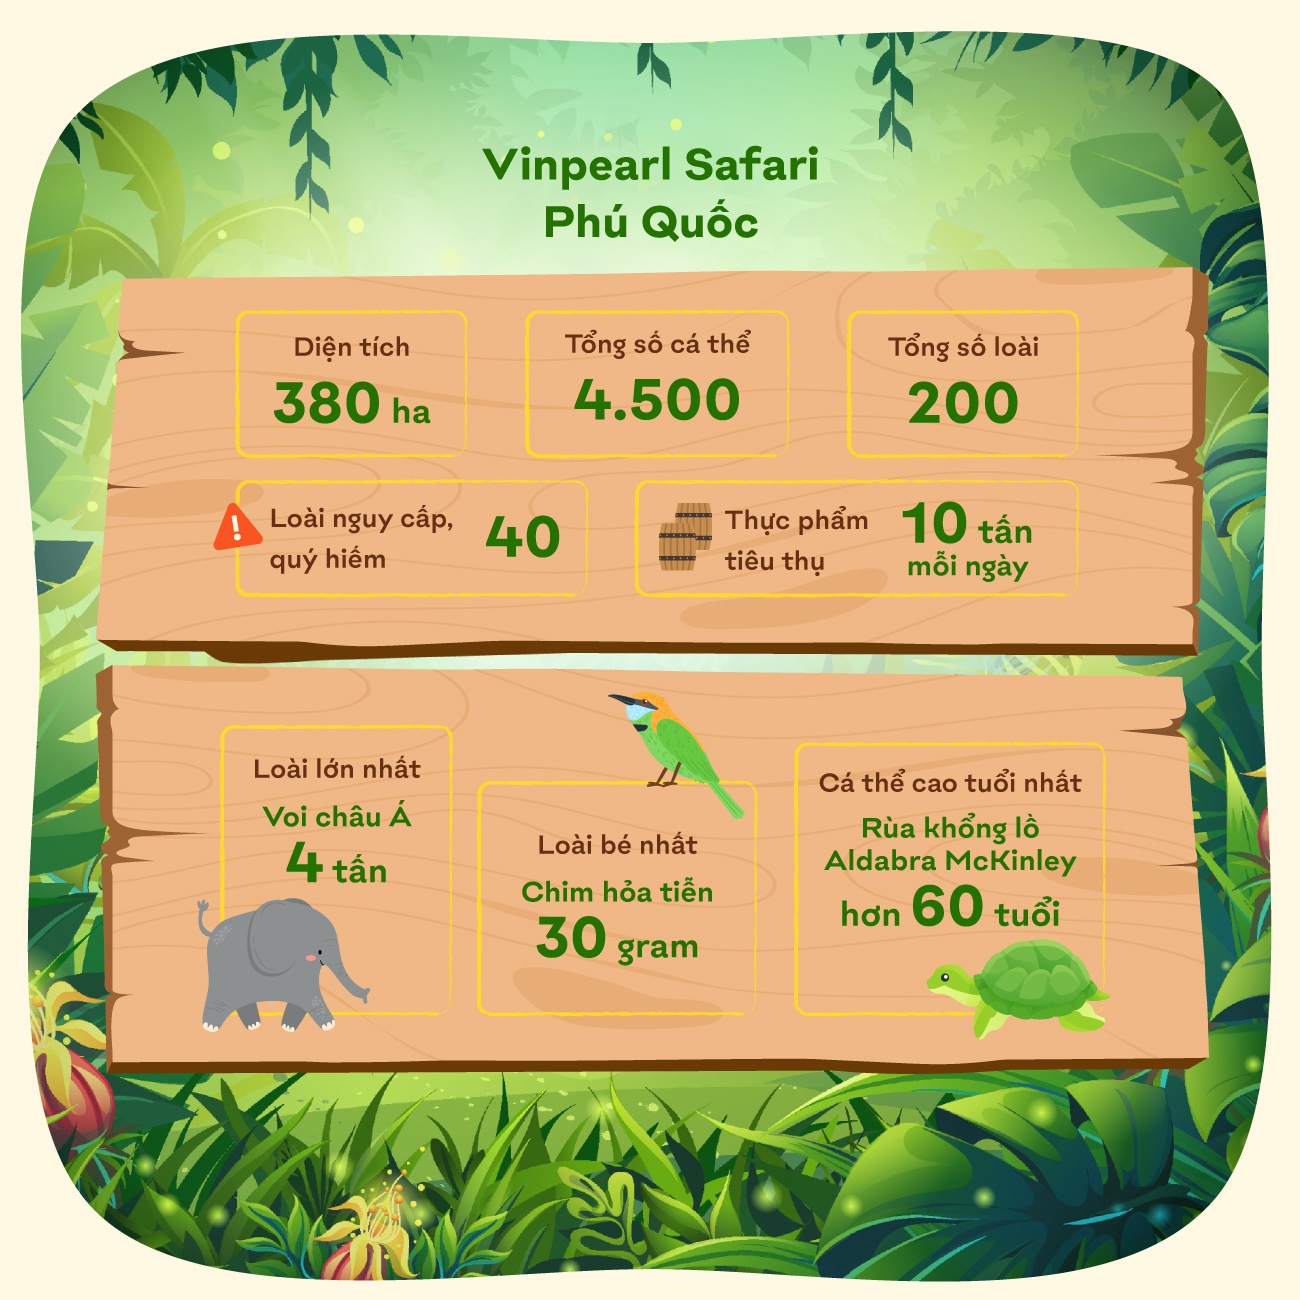 Vinpearl Safari Phu Quoc anh 3  - mini_info_2__1 - Giữ trọn &#8216;vùng xanh&#8217; hoang dã trên đảo ngọc